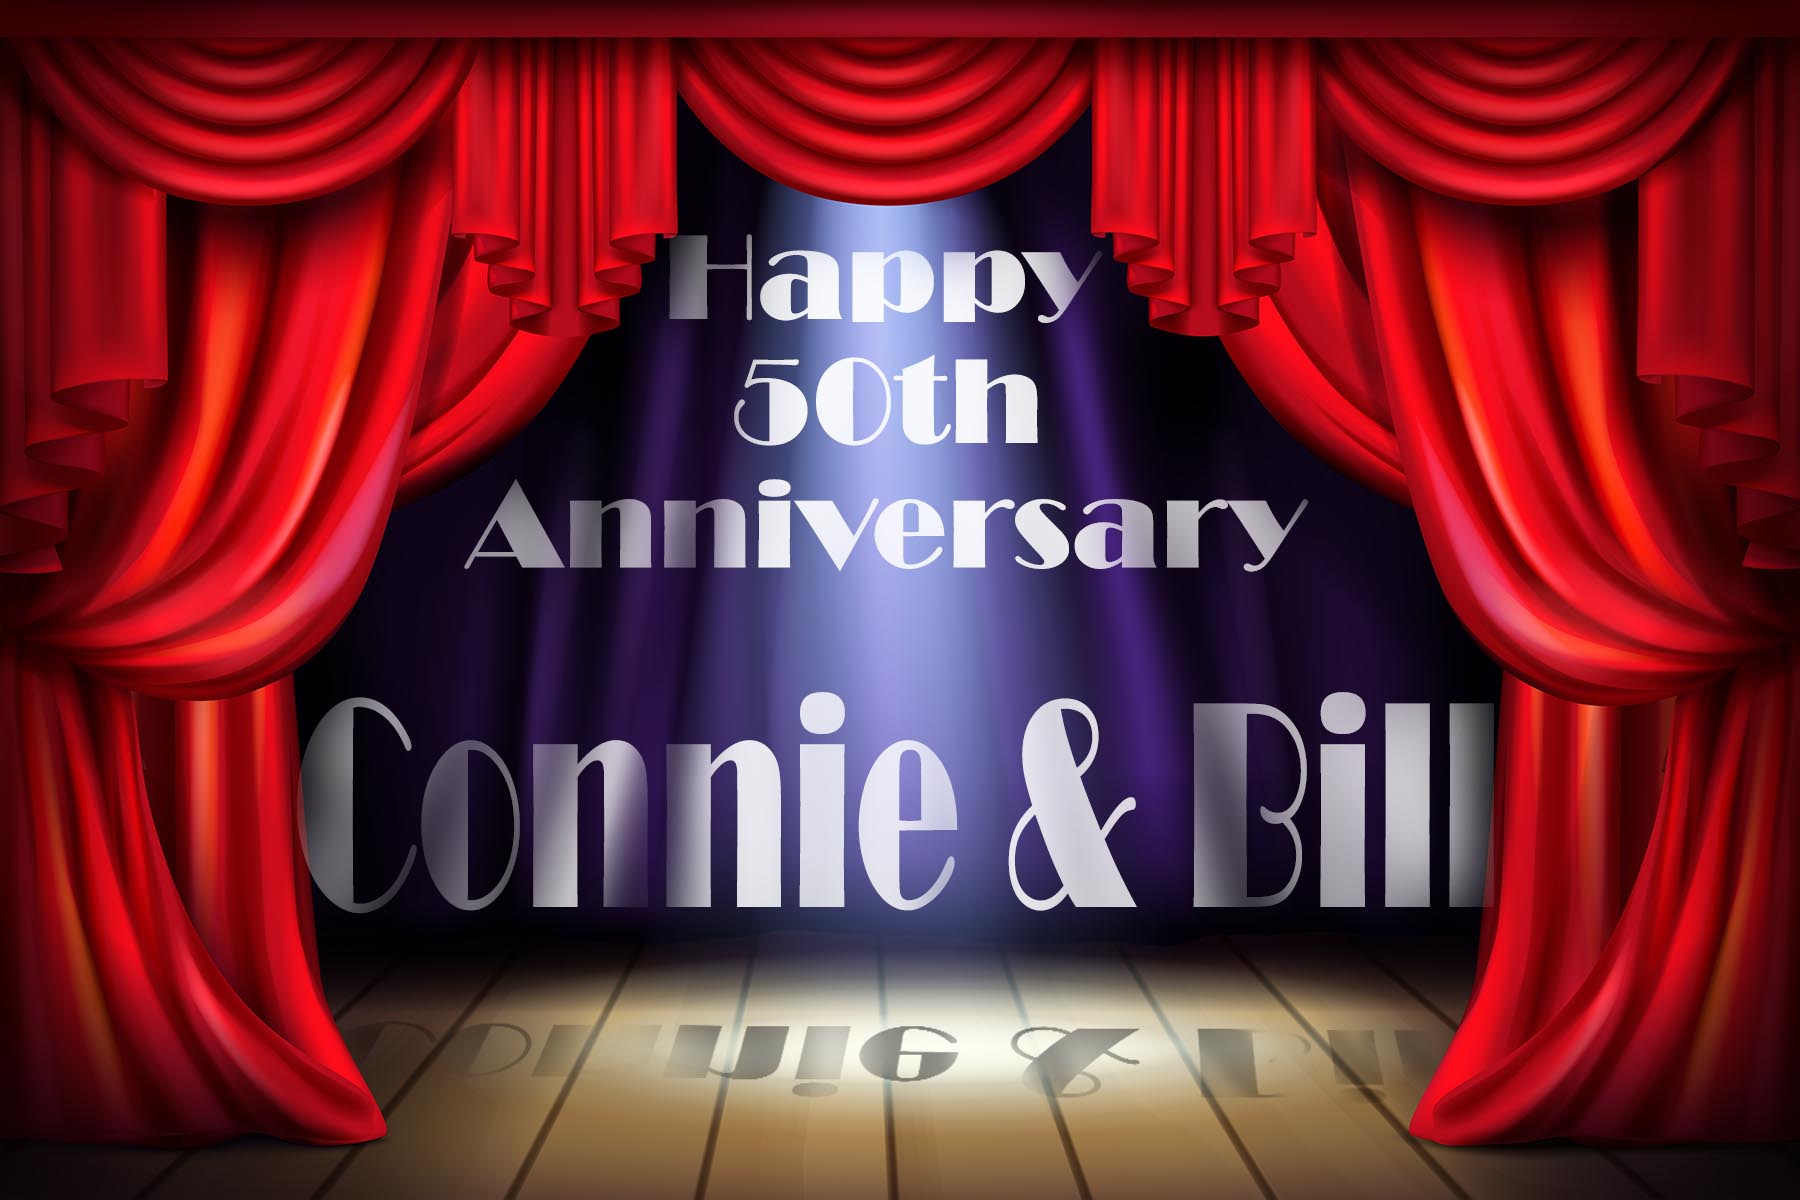 happy-50th-anniversary-connie-bill-sign